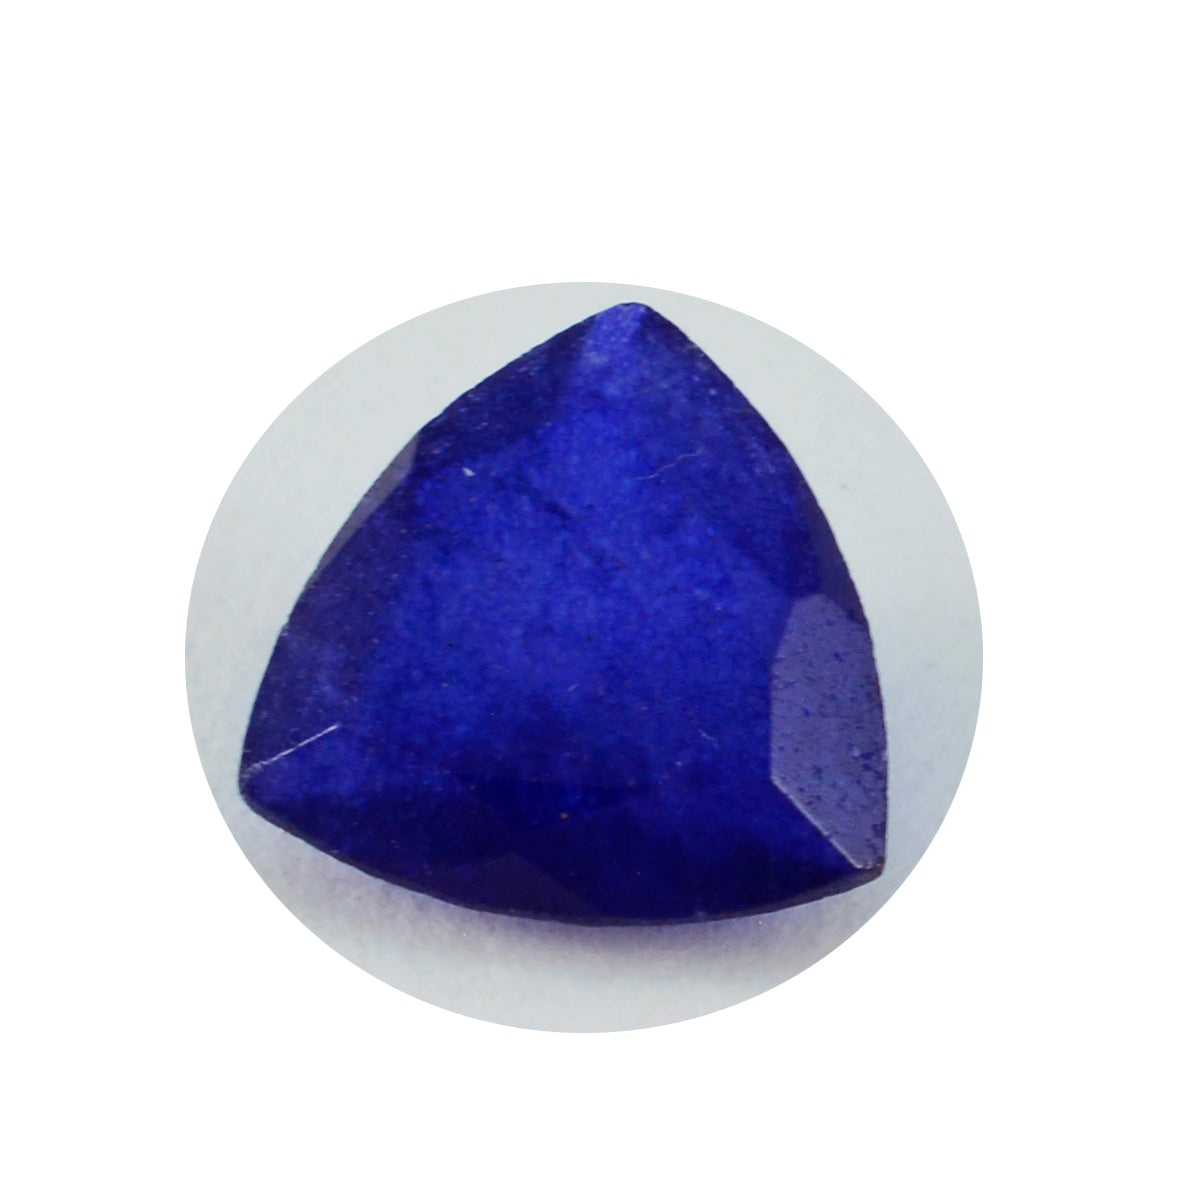 Riyogems 1 Stück echter blauer Jaspis, facettiert, 13 x 13 mm, Billionenform, wunderbarer Qualitätsedelstein